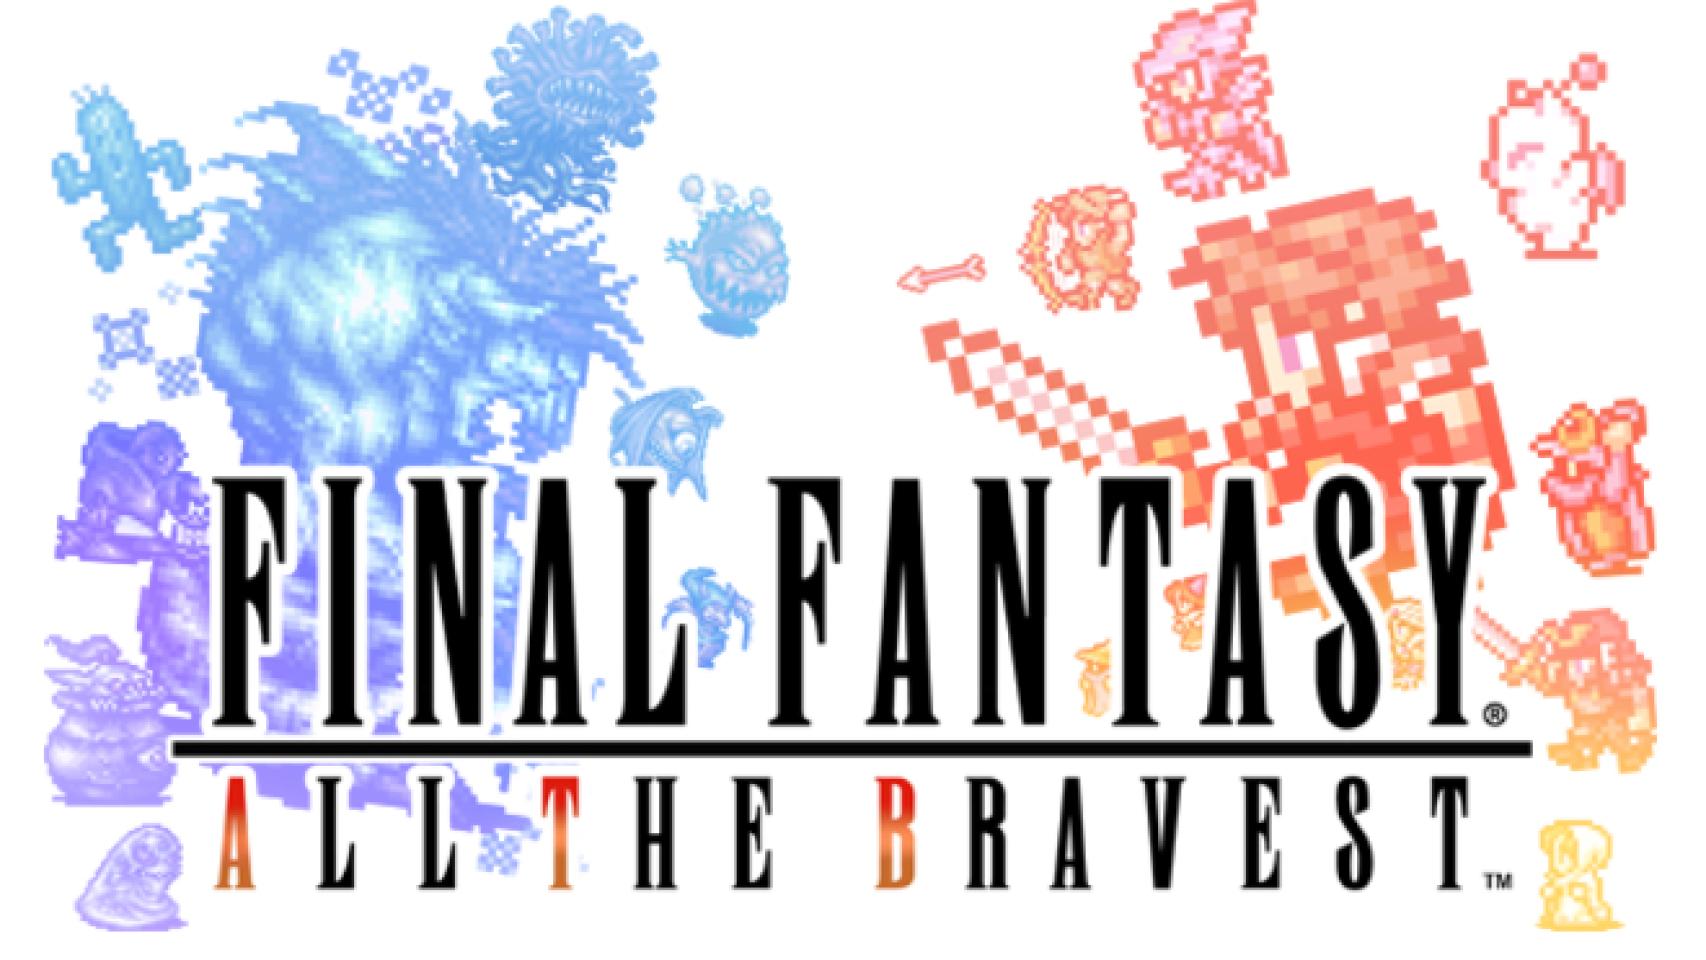 Final Fantasy: All the Bravest, la saga clásica como nunca la habías jugado